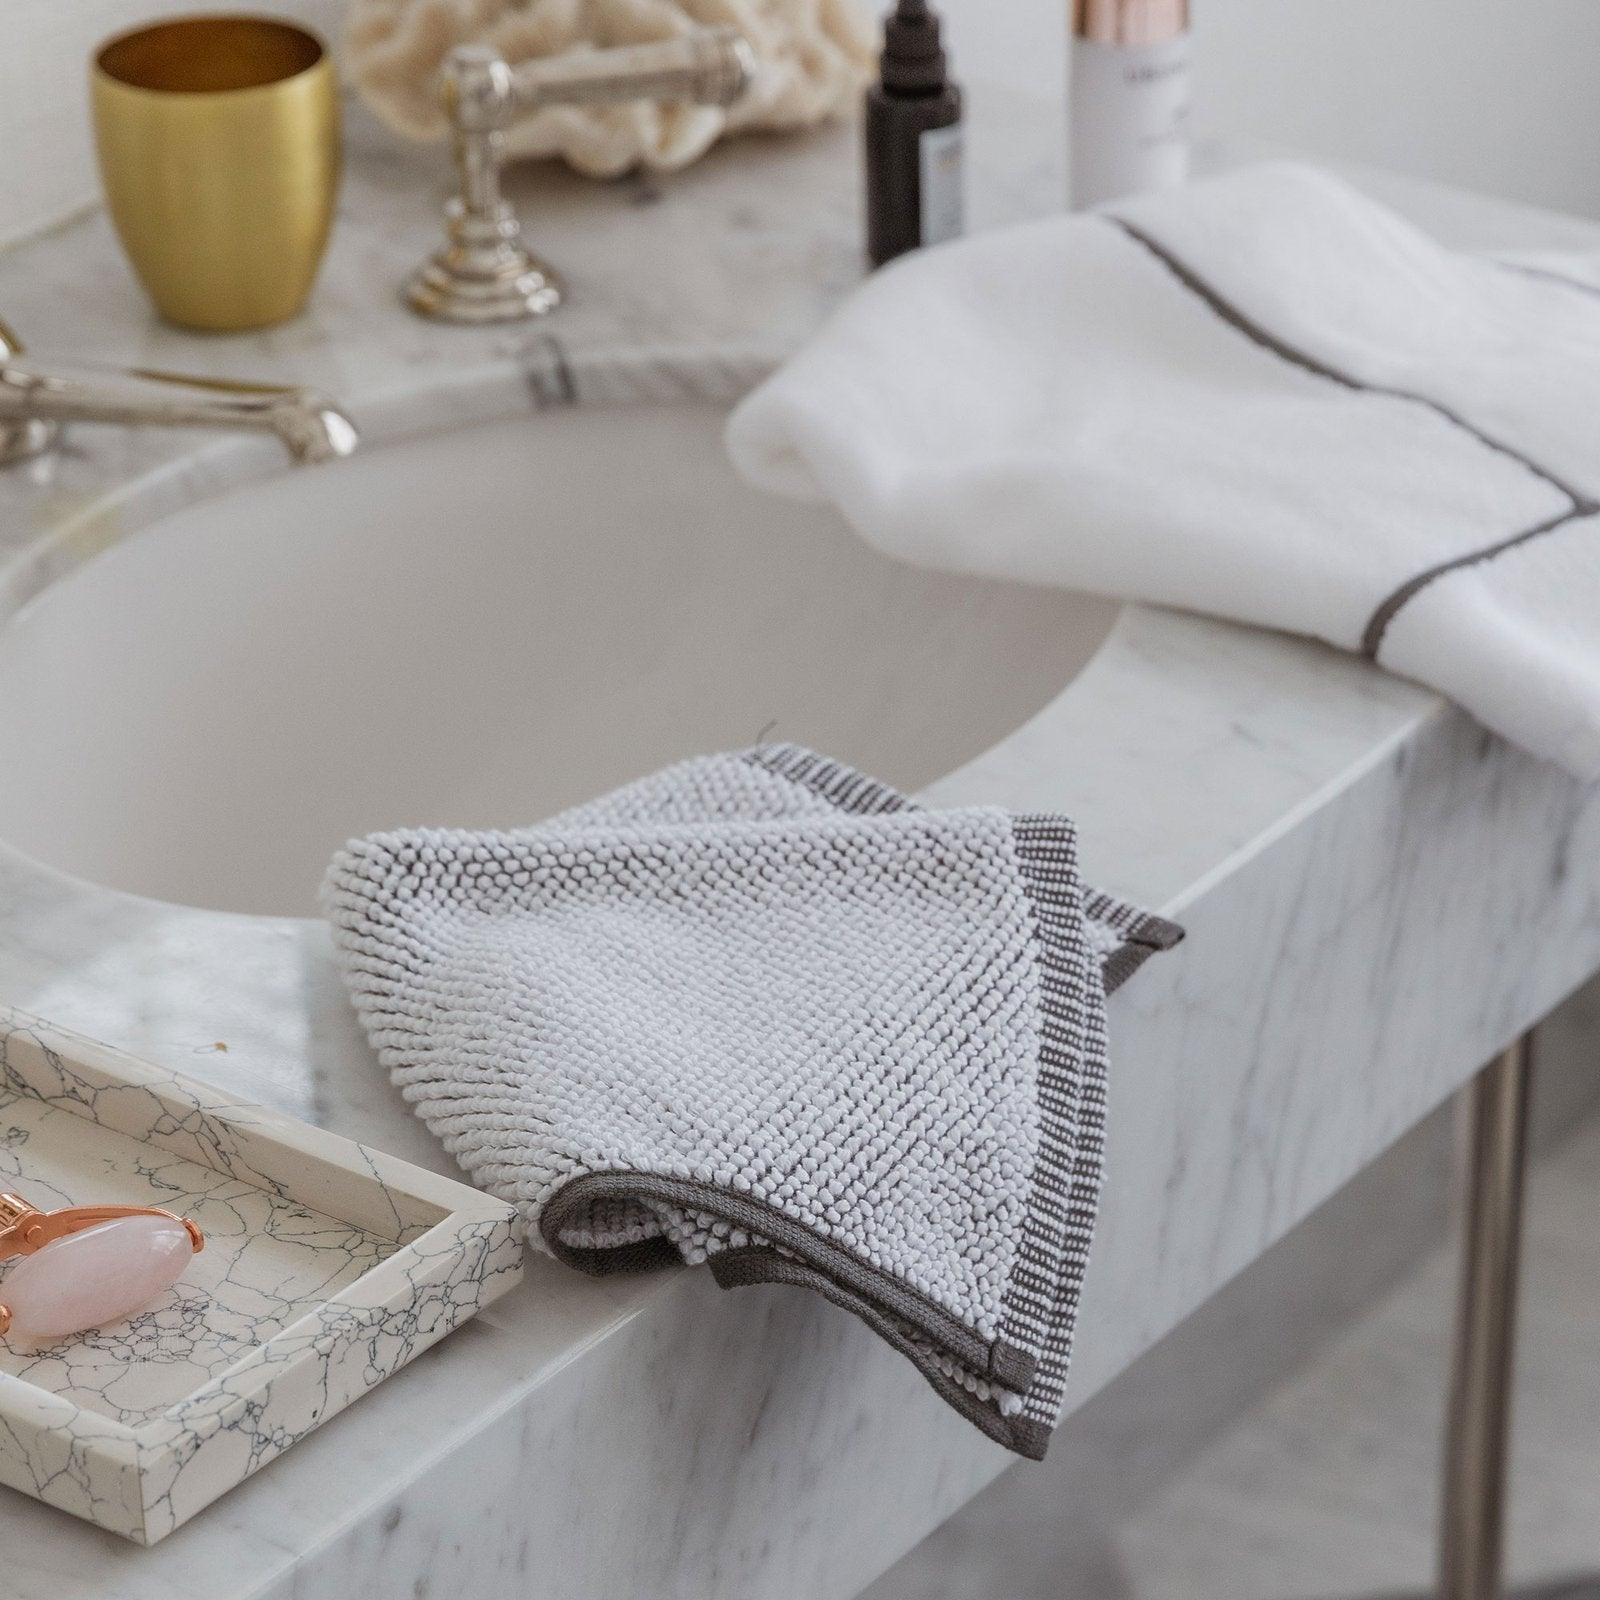 Assisi Textured Towels - Elegant Linen